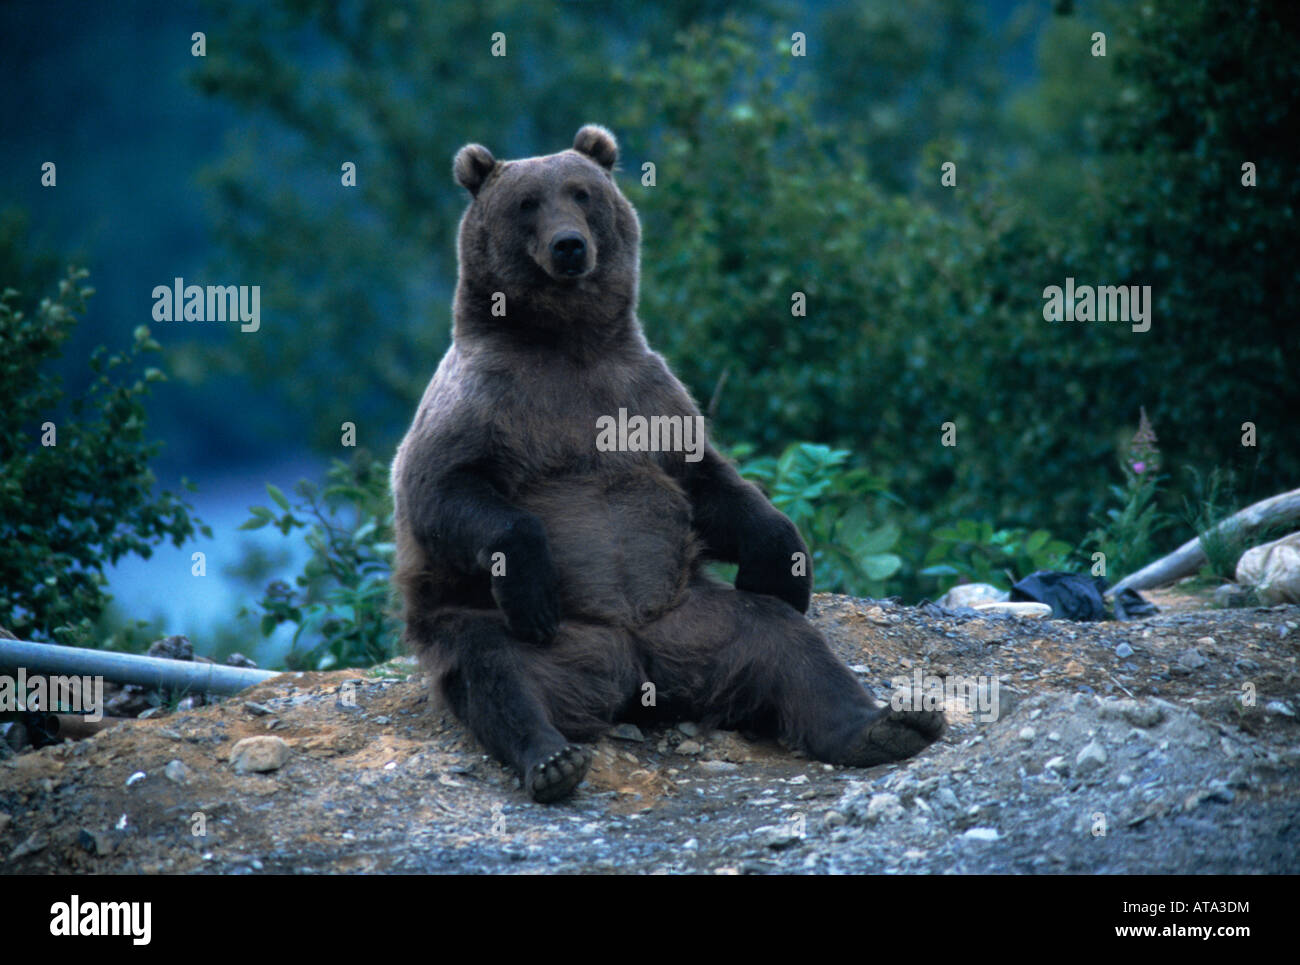 Kodiak bear (Ursus arctos middendorffi) at city dump, Kodiak Alaska Stock Photo